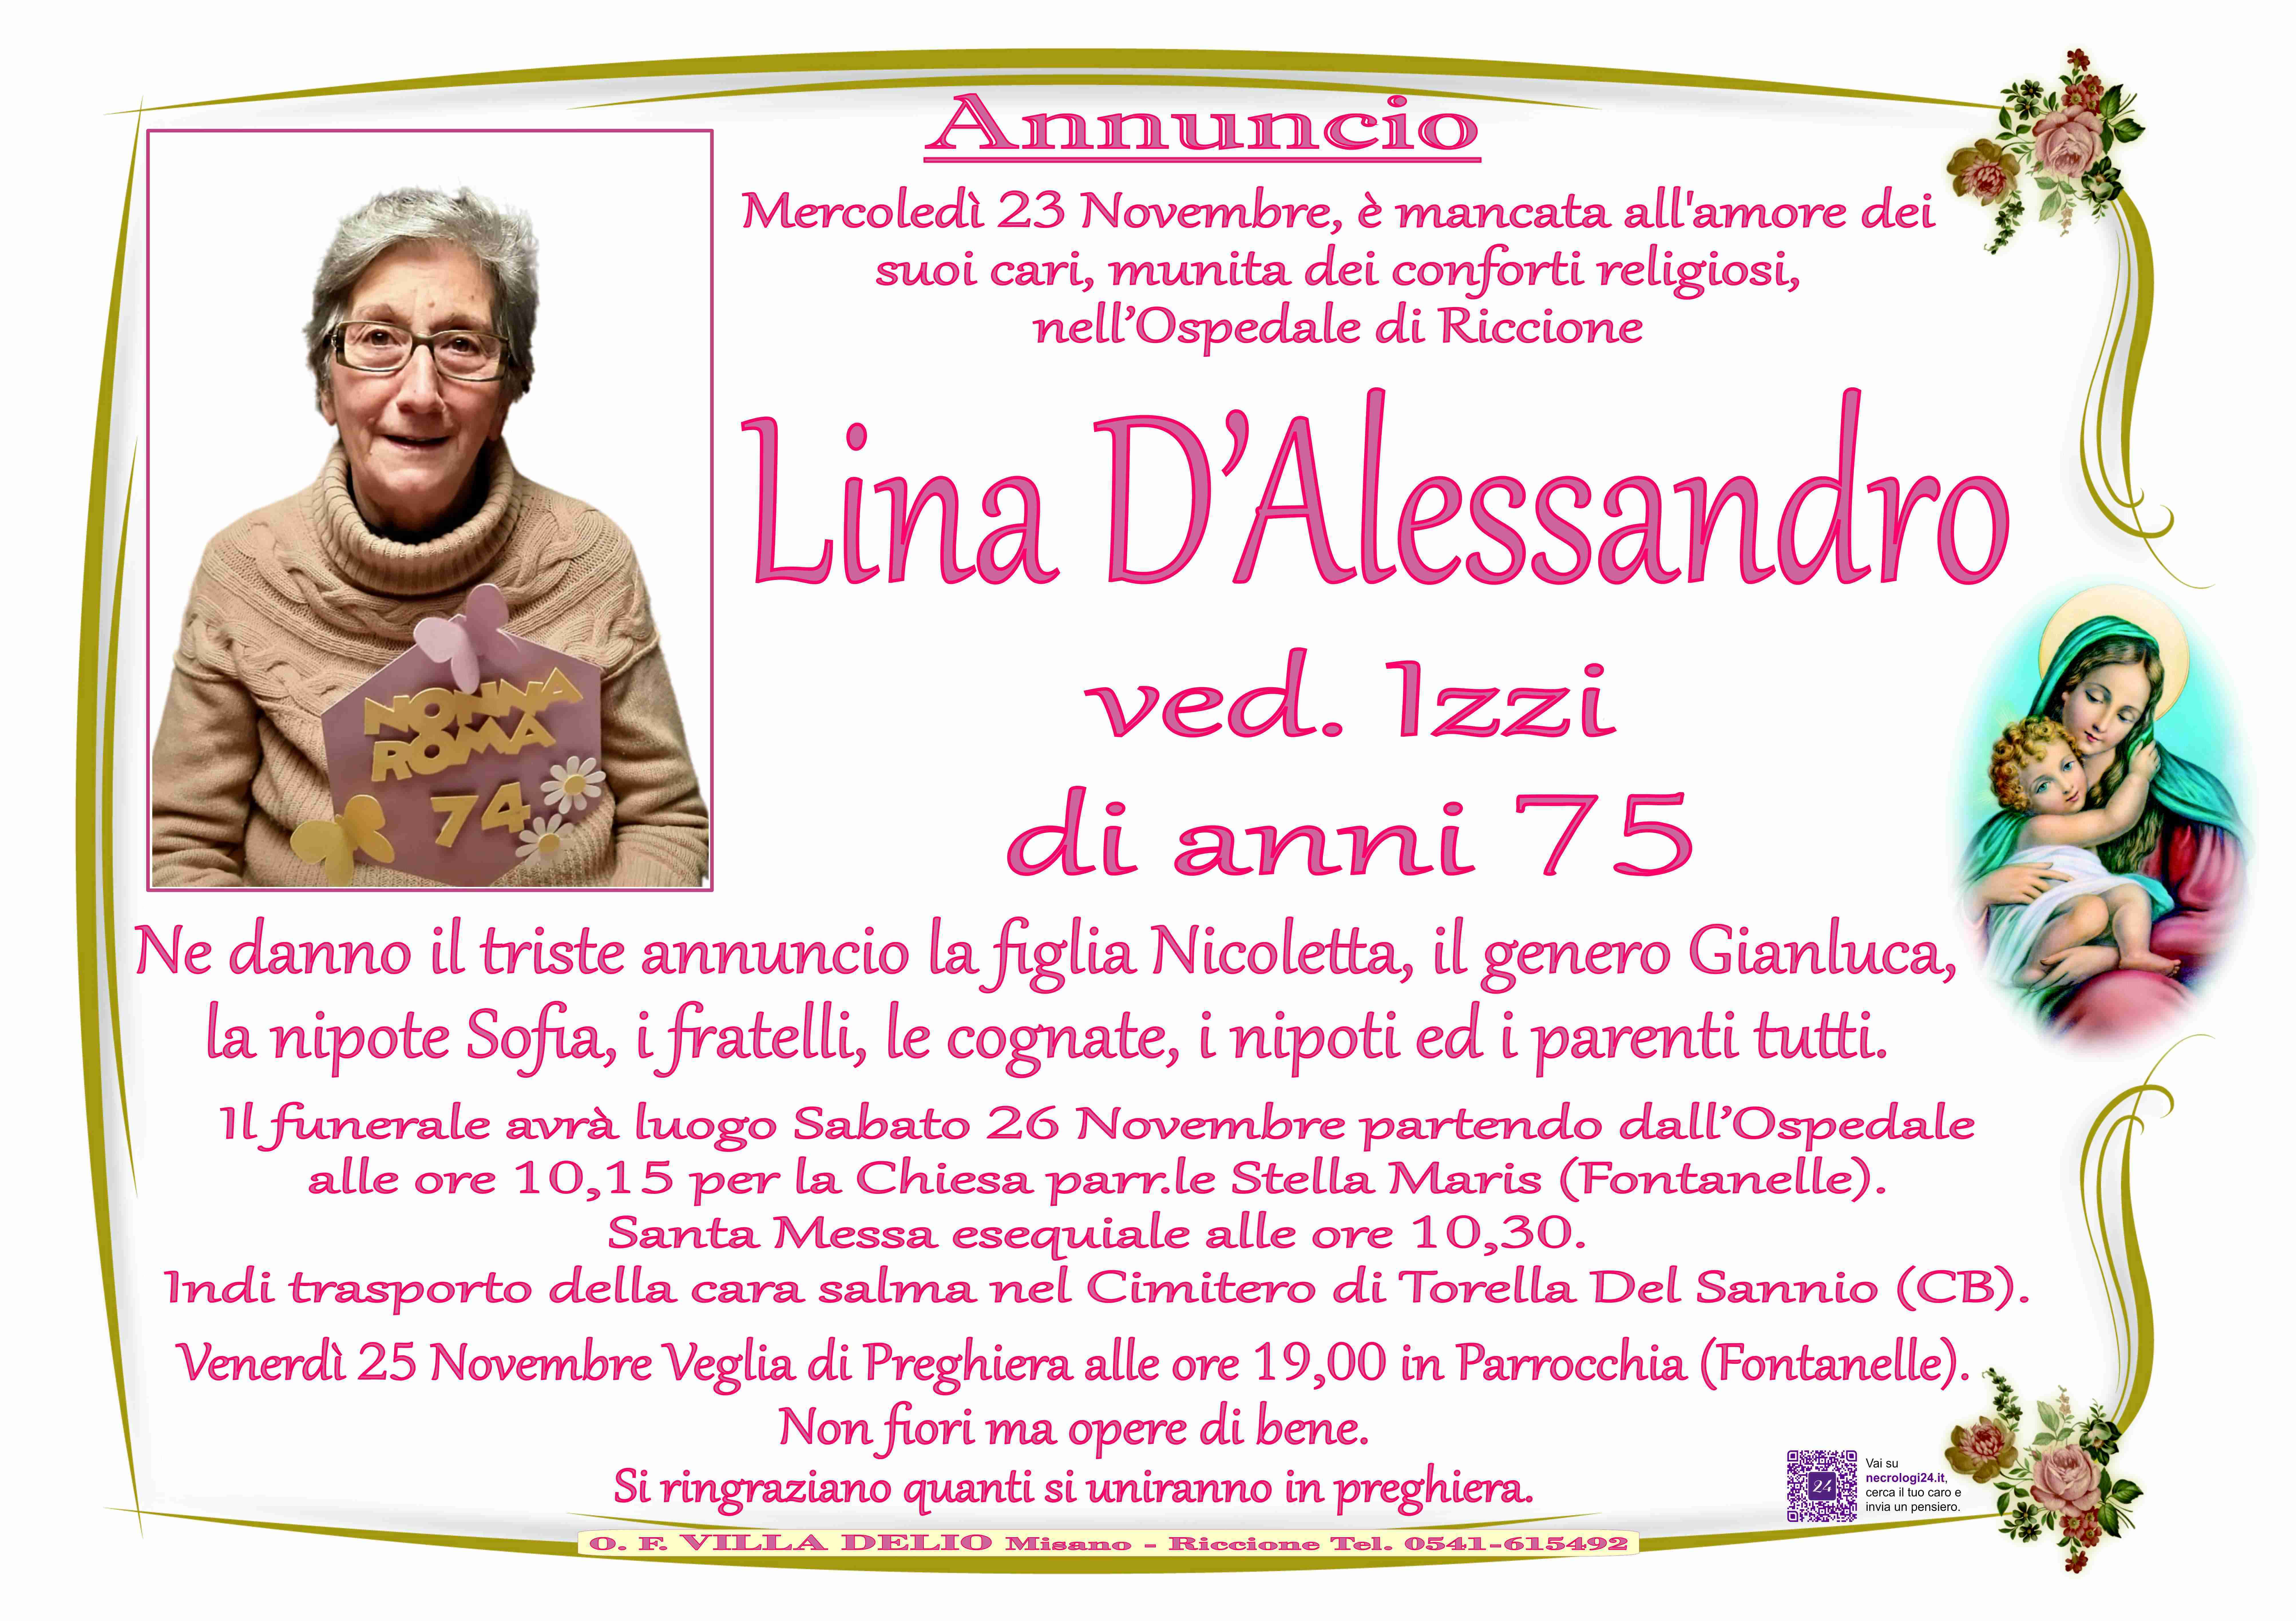 Lina D'Alessandro